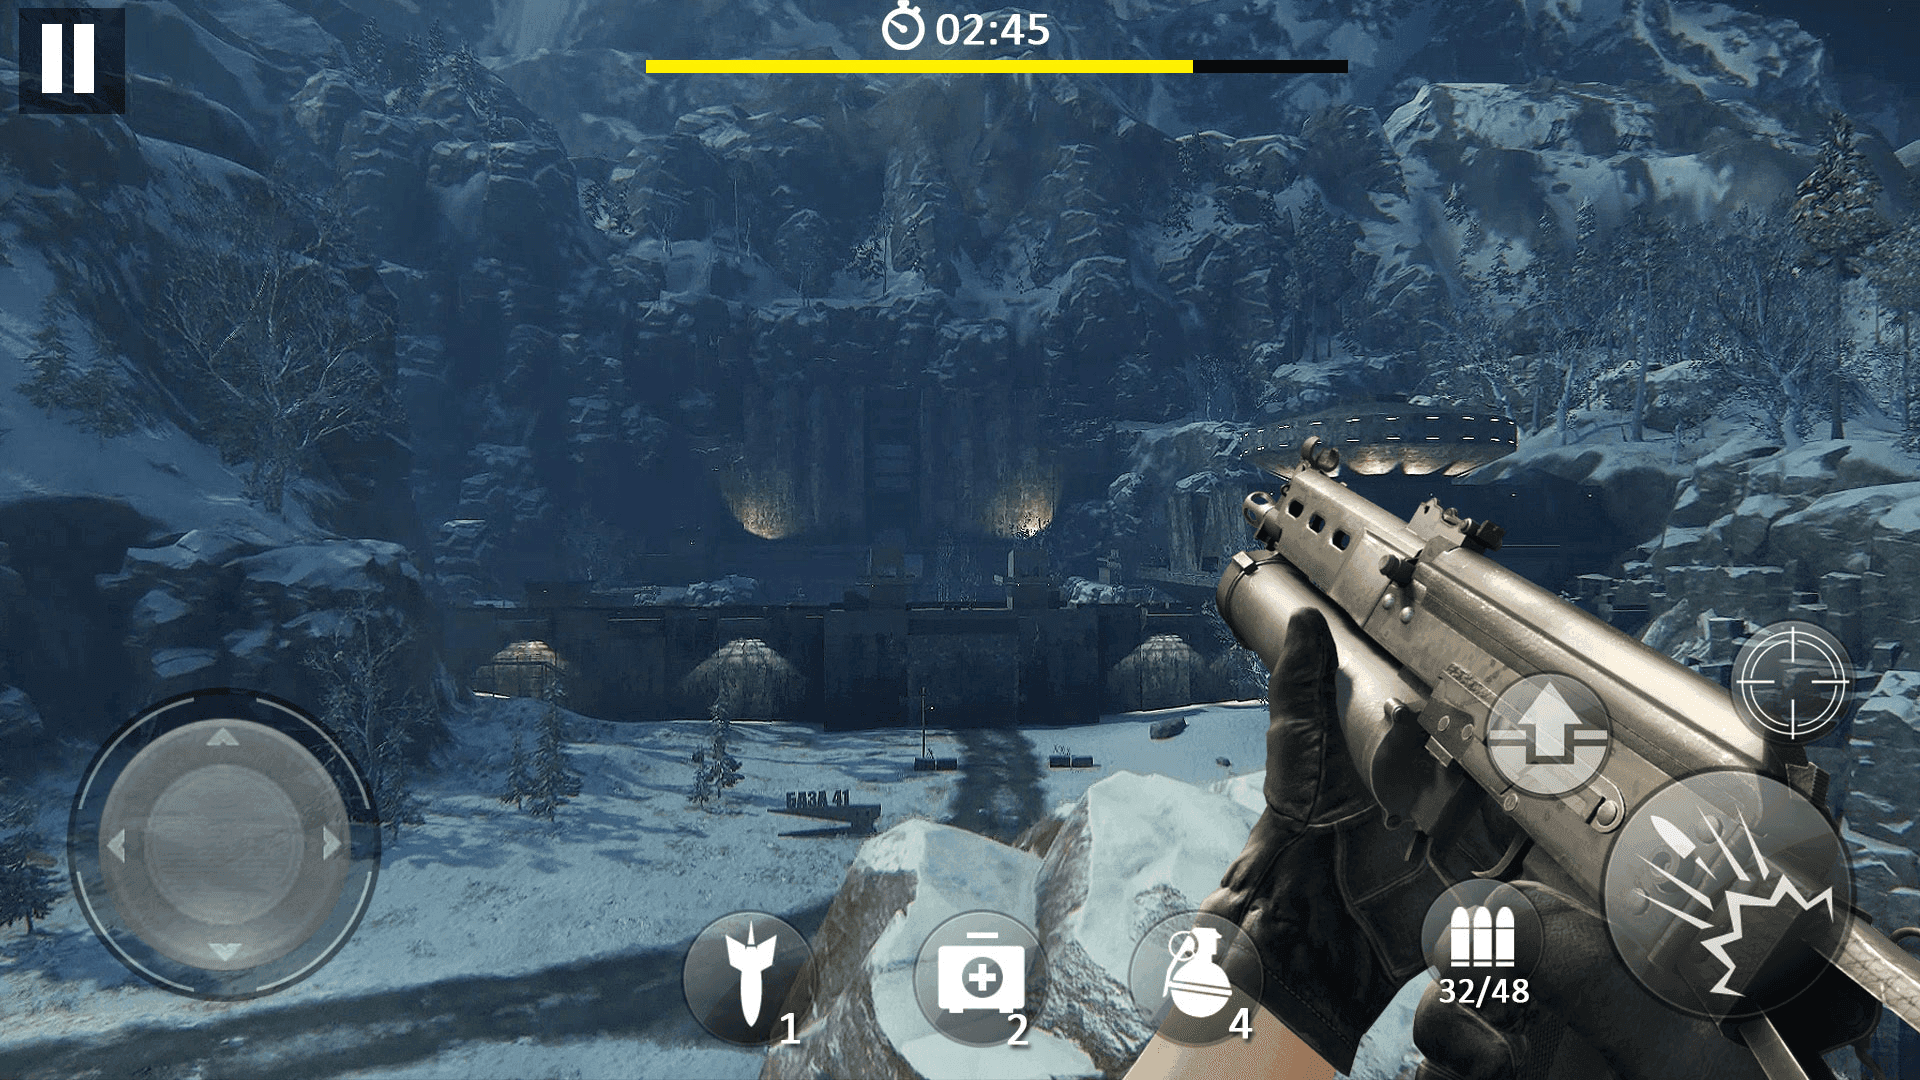 Screenshot 1 of घातक लक्ष्य निशानेबाज- 2019 शूटिंग गेम की अनदेखी करें 